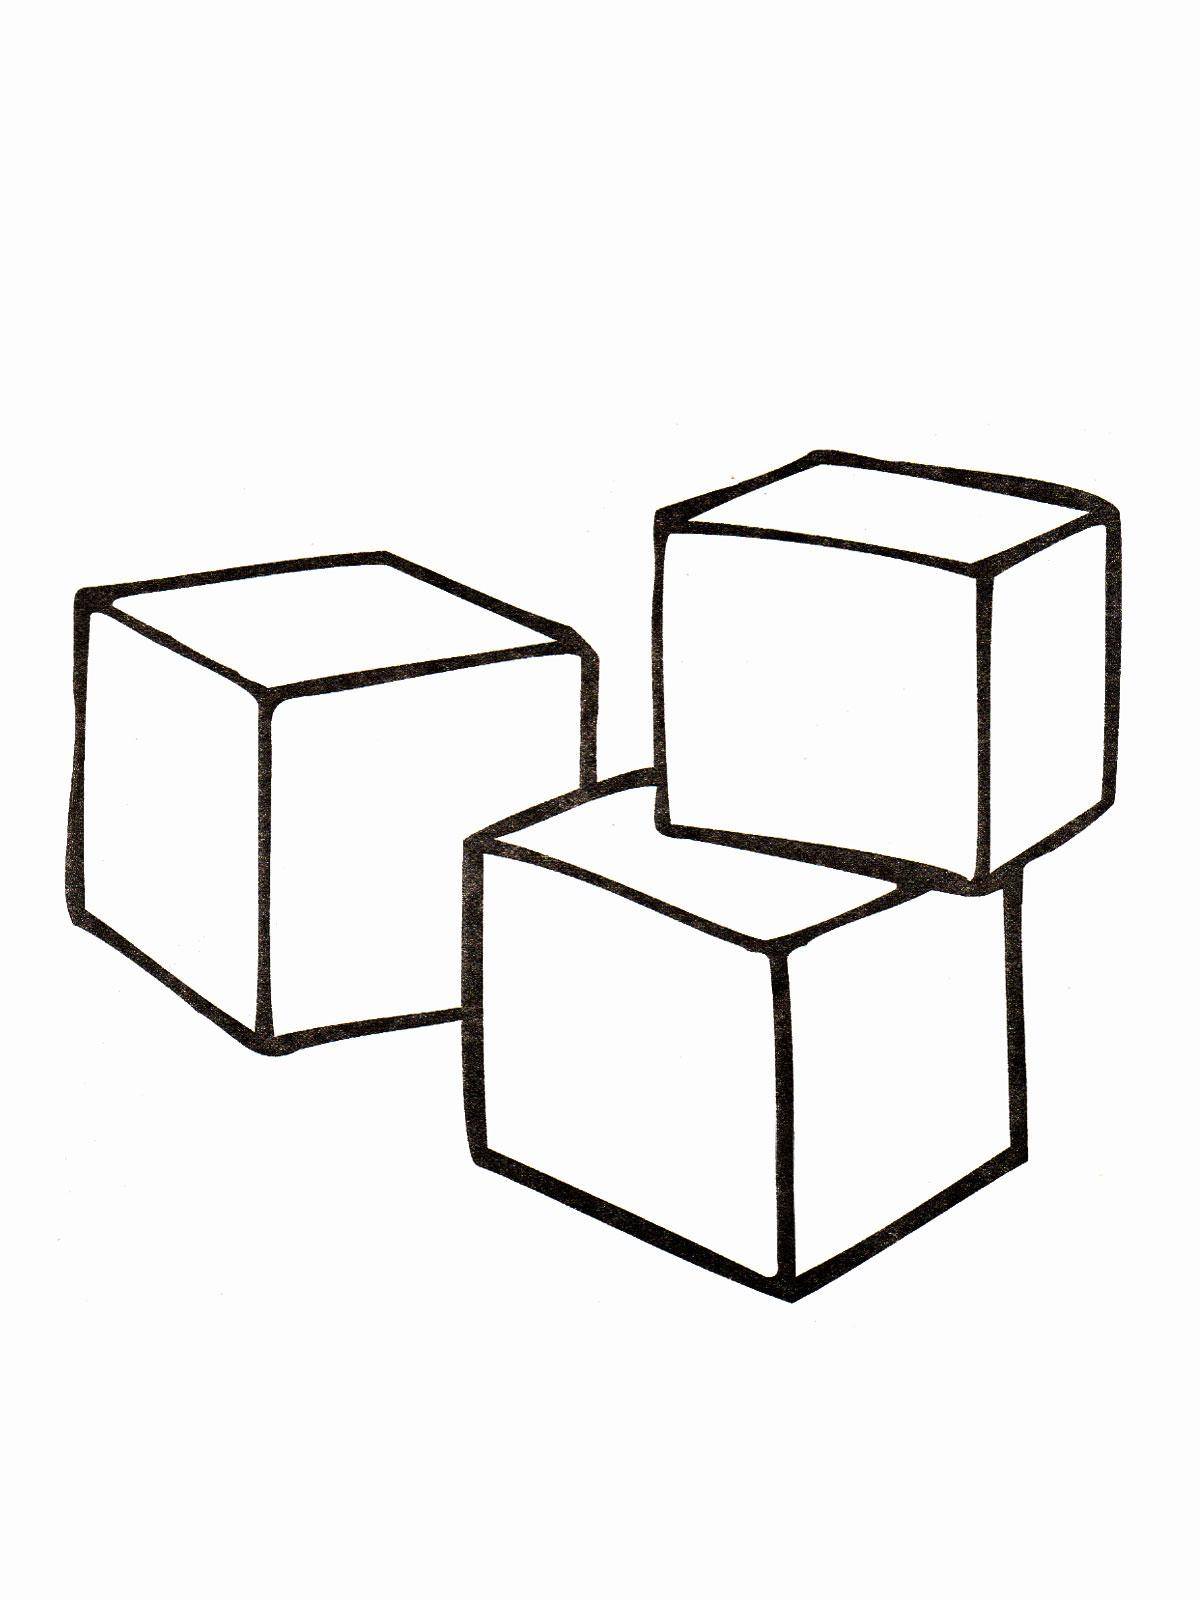 Название: Раскраска Три кубика. Категория: игрушки. Теги: кубики, игрушки.